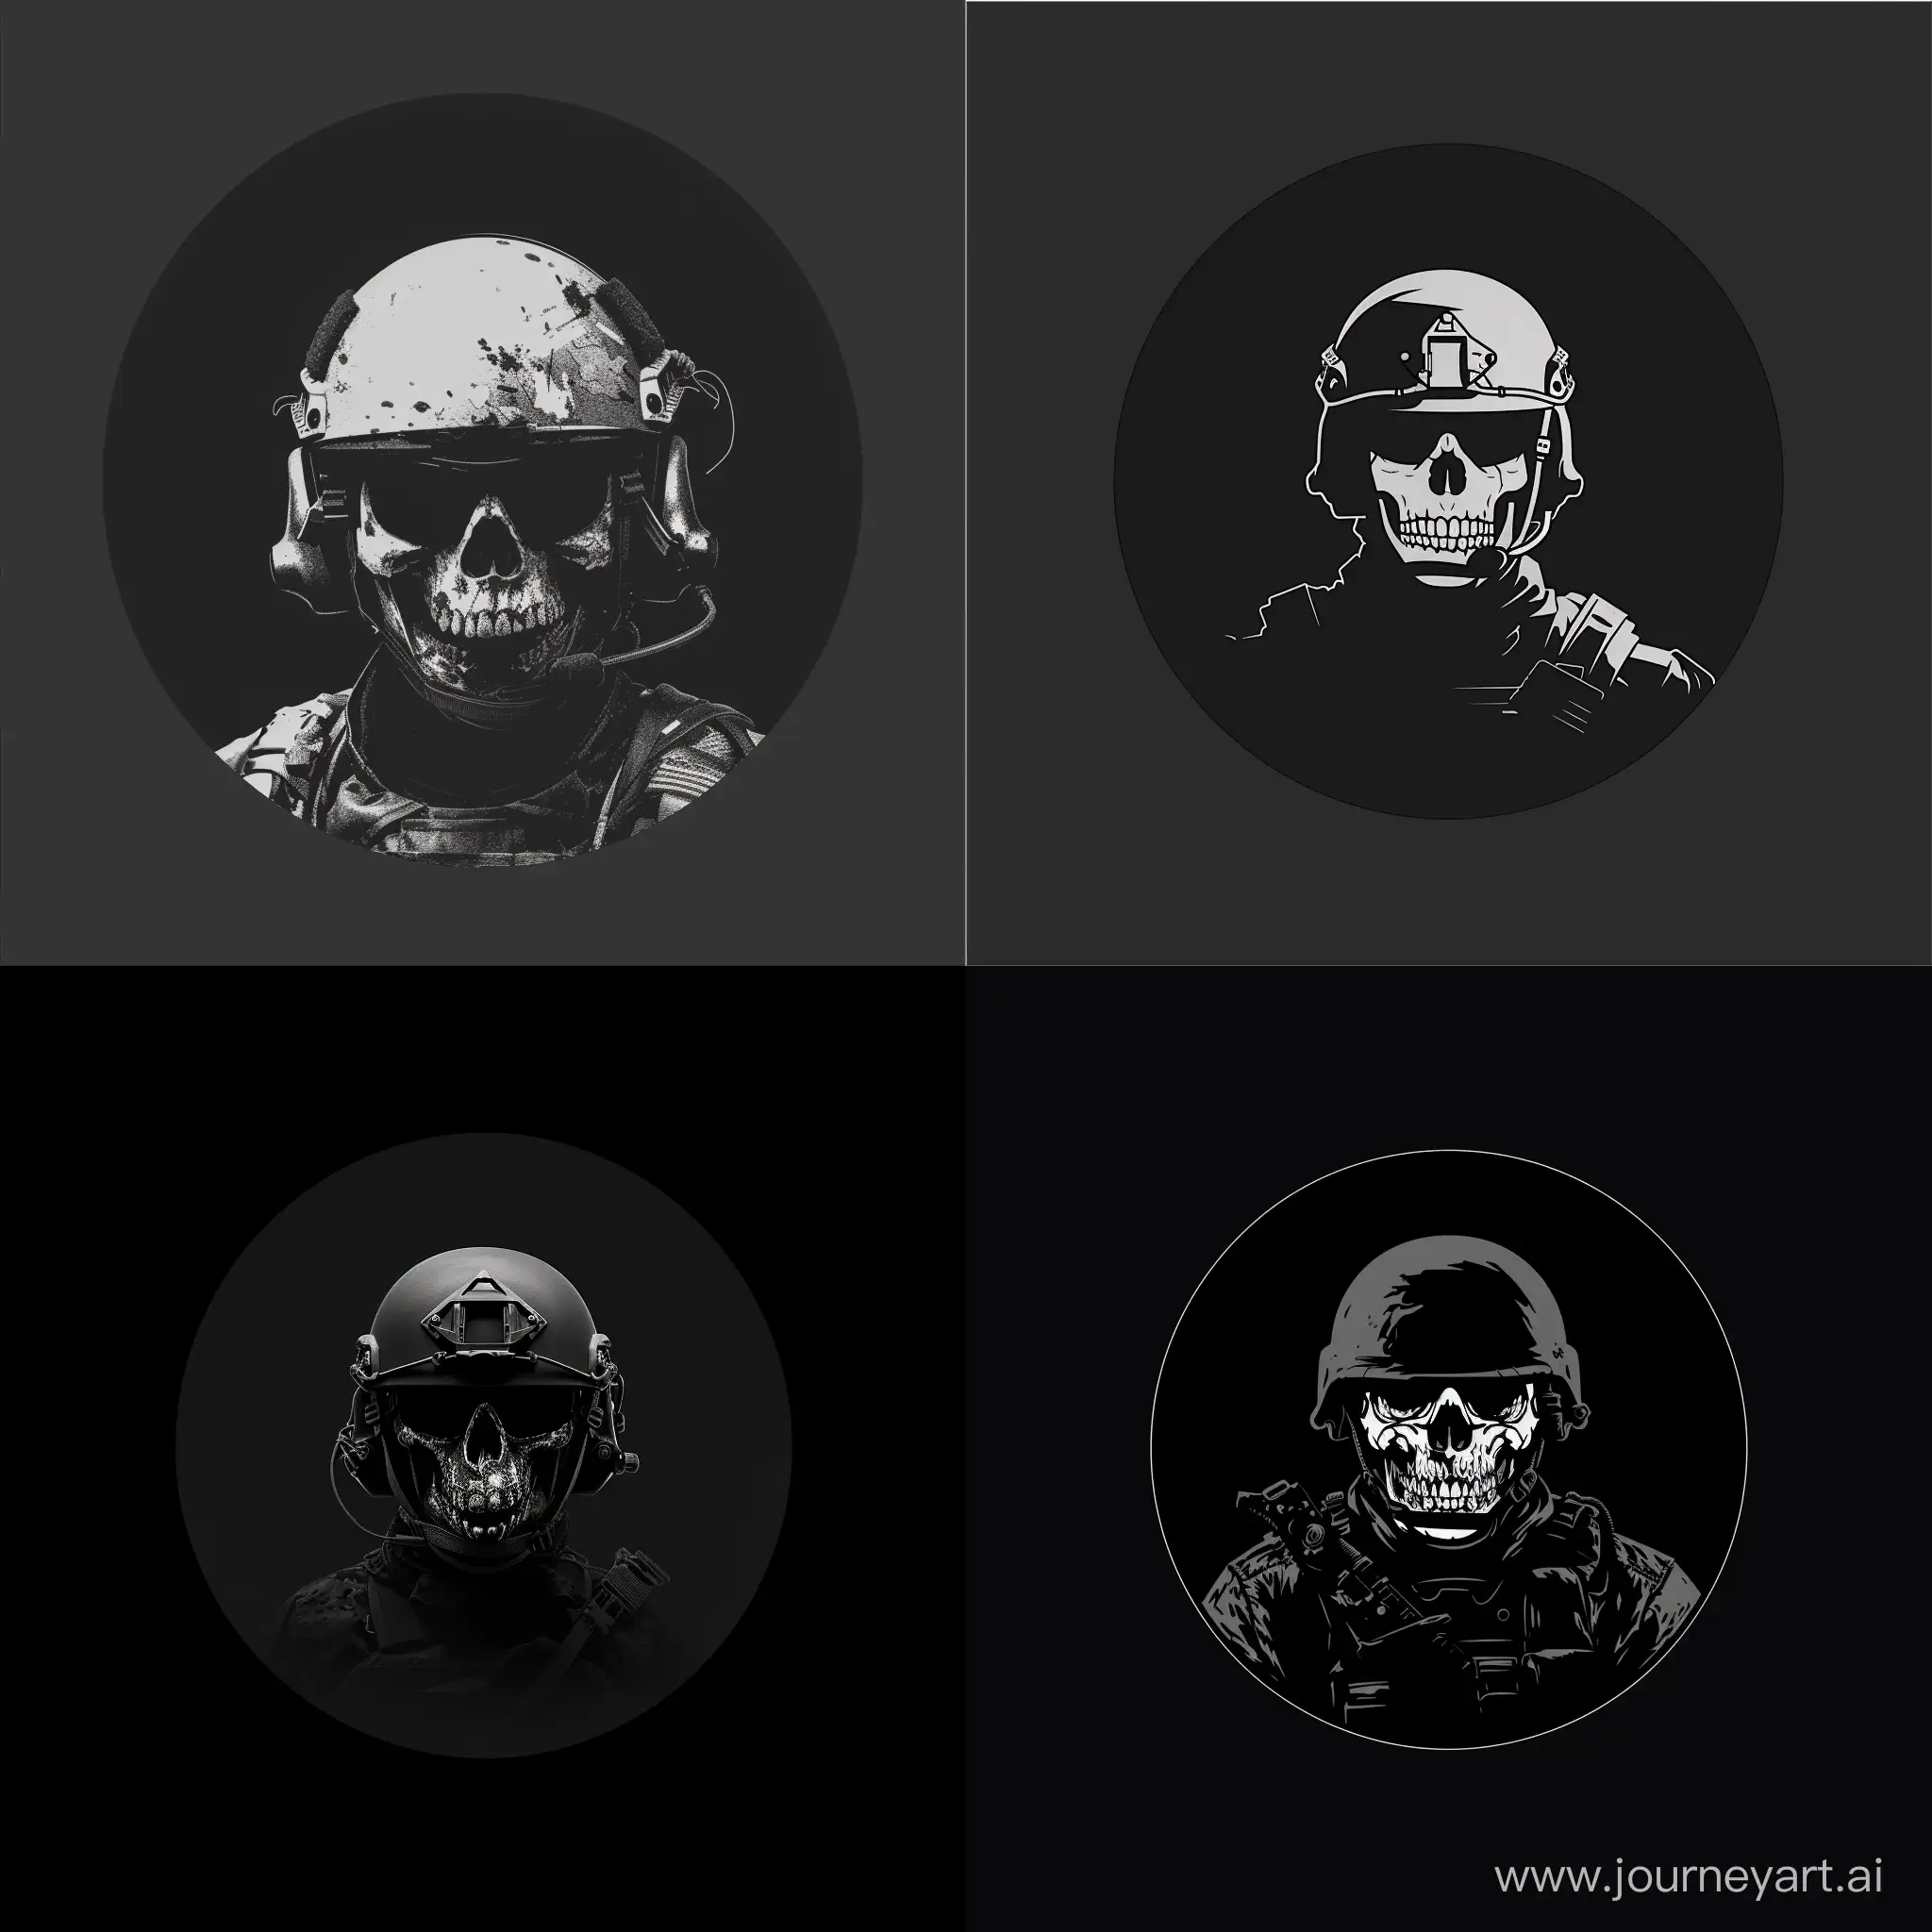 Modern-Military-Skull-Logo-on-Black-Background